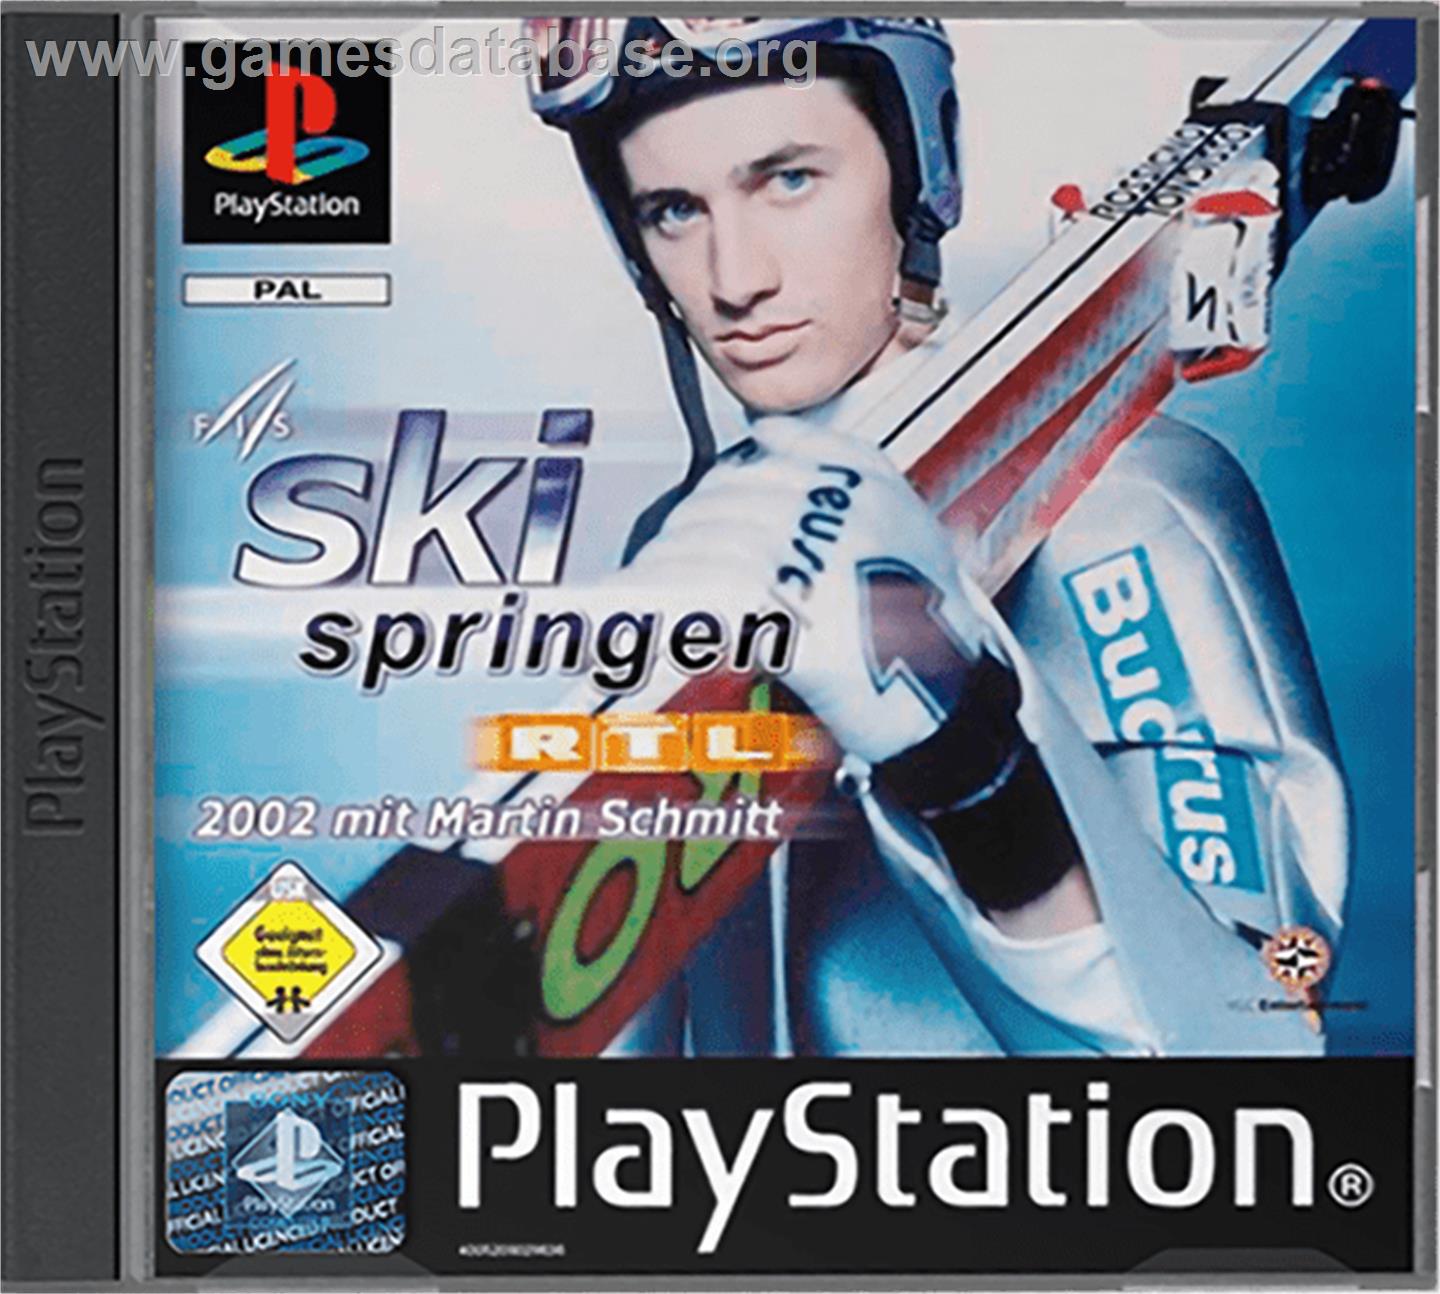 RTL Skispringen 2002 - Sony Playstation - Artwork - Box